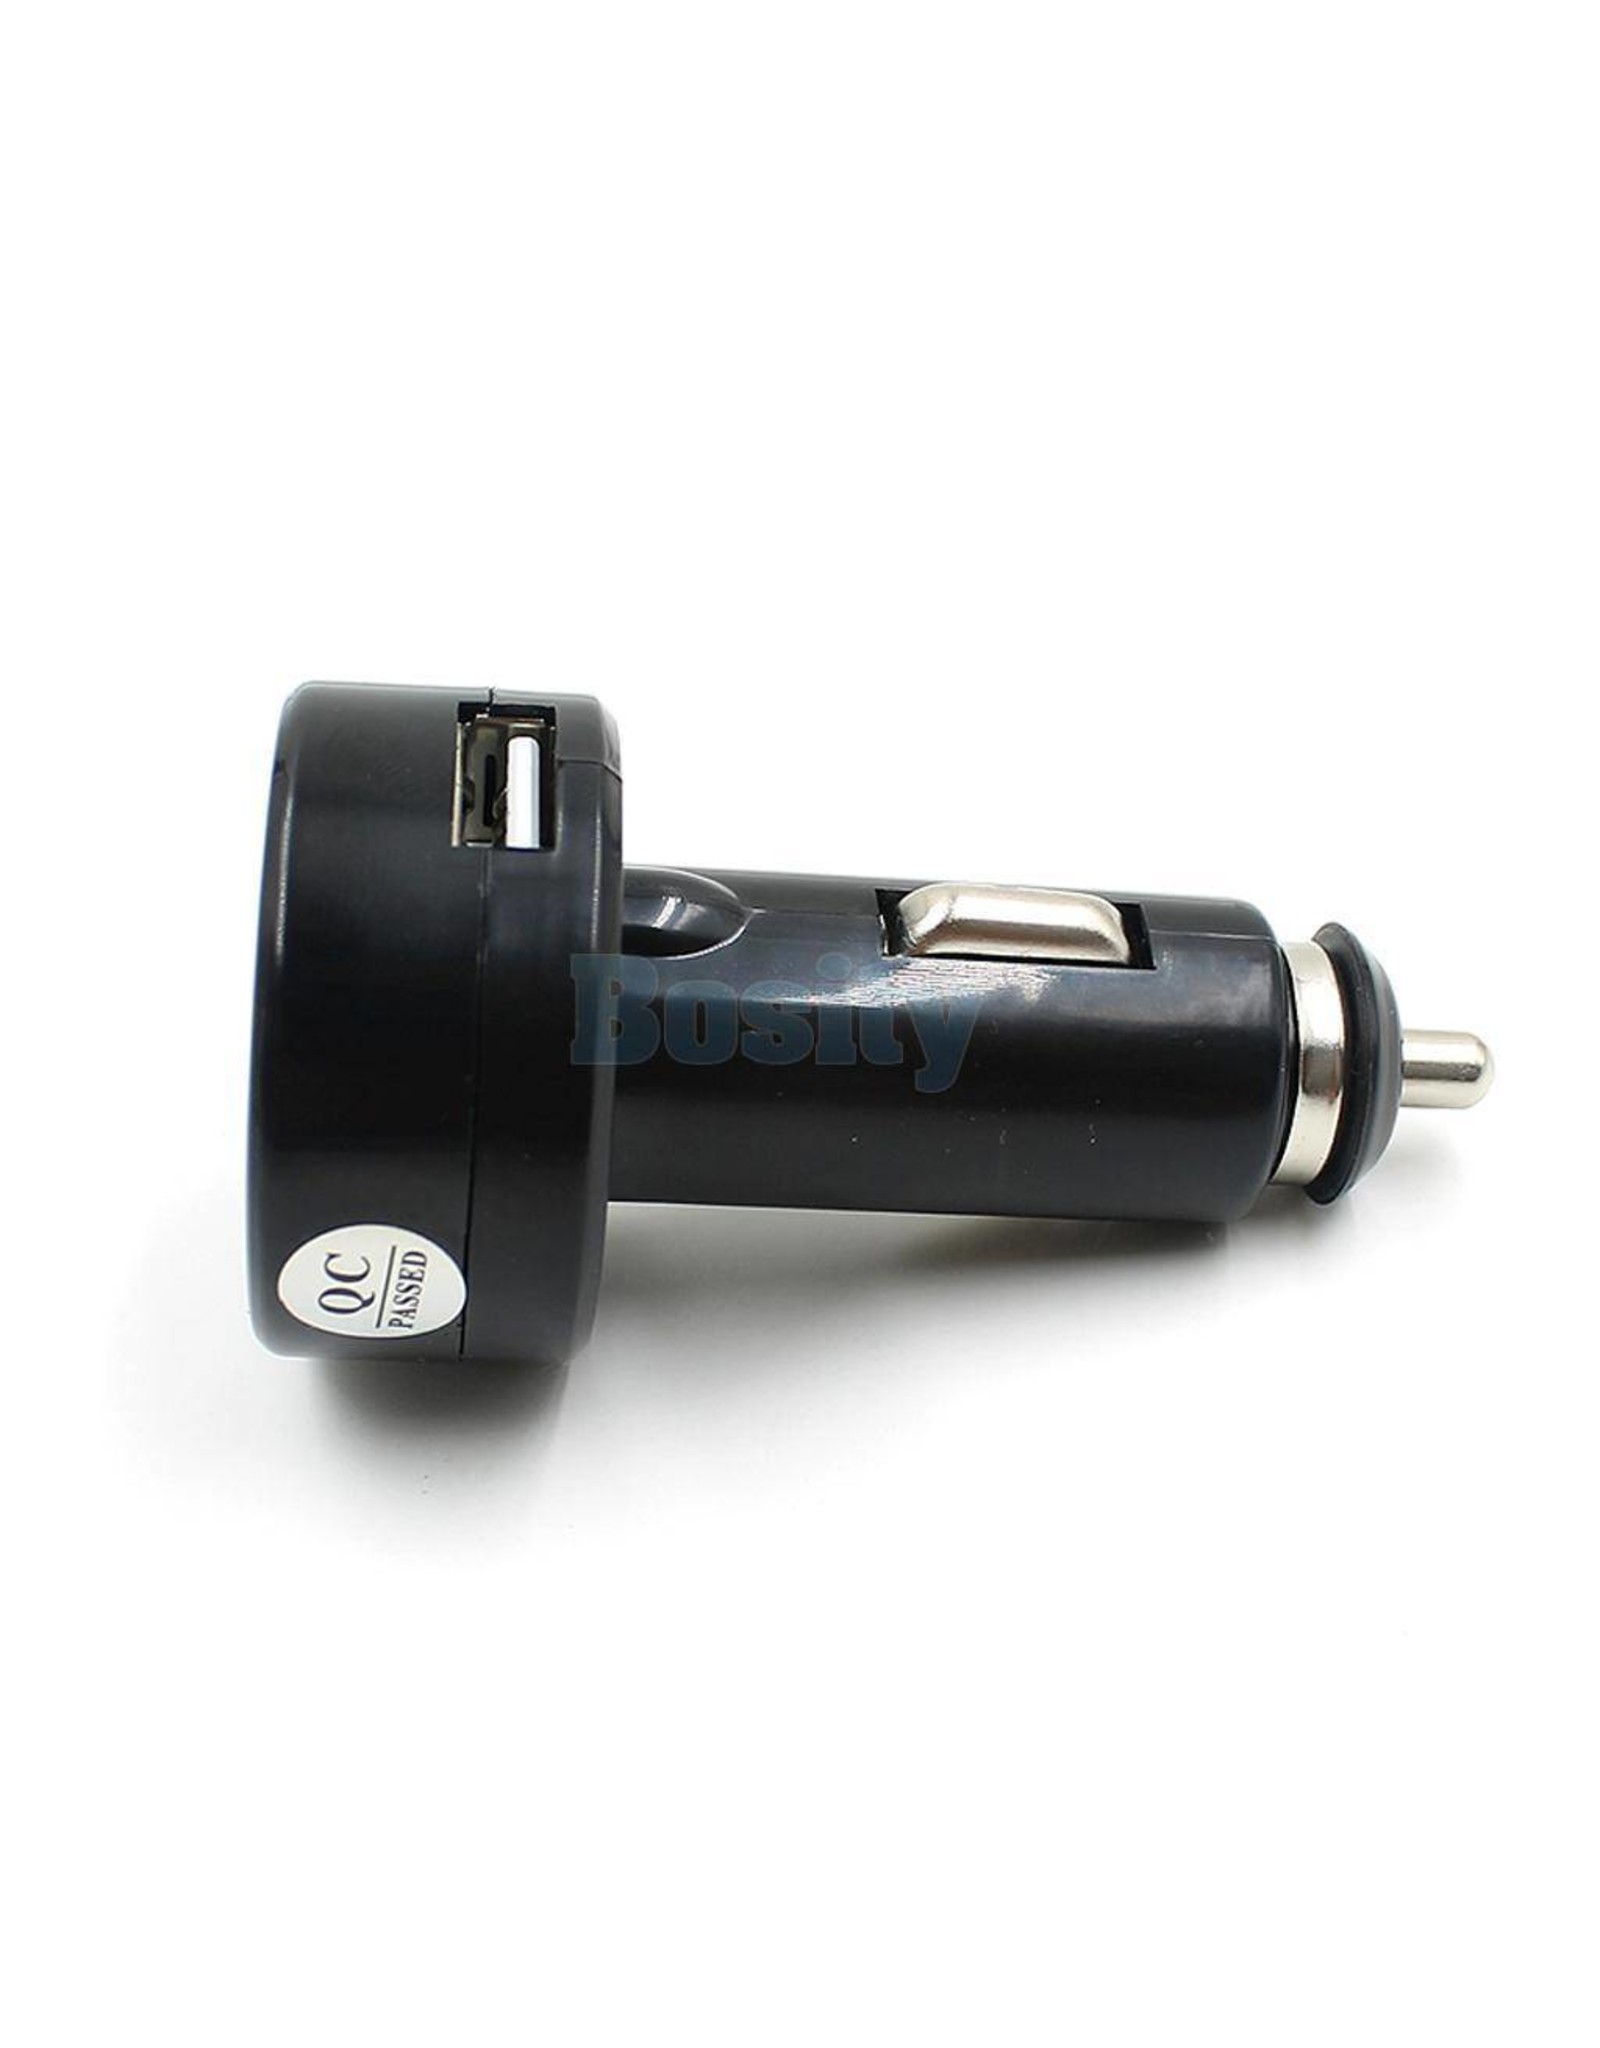 Voltmeter for 12v Car Cigarette Lighter outlet with USB Power Socket Charger with Red LED